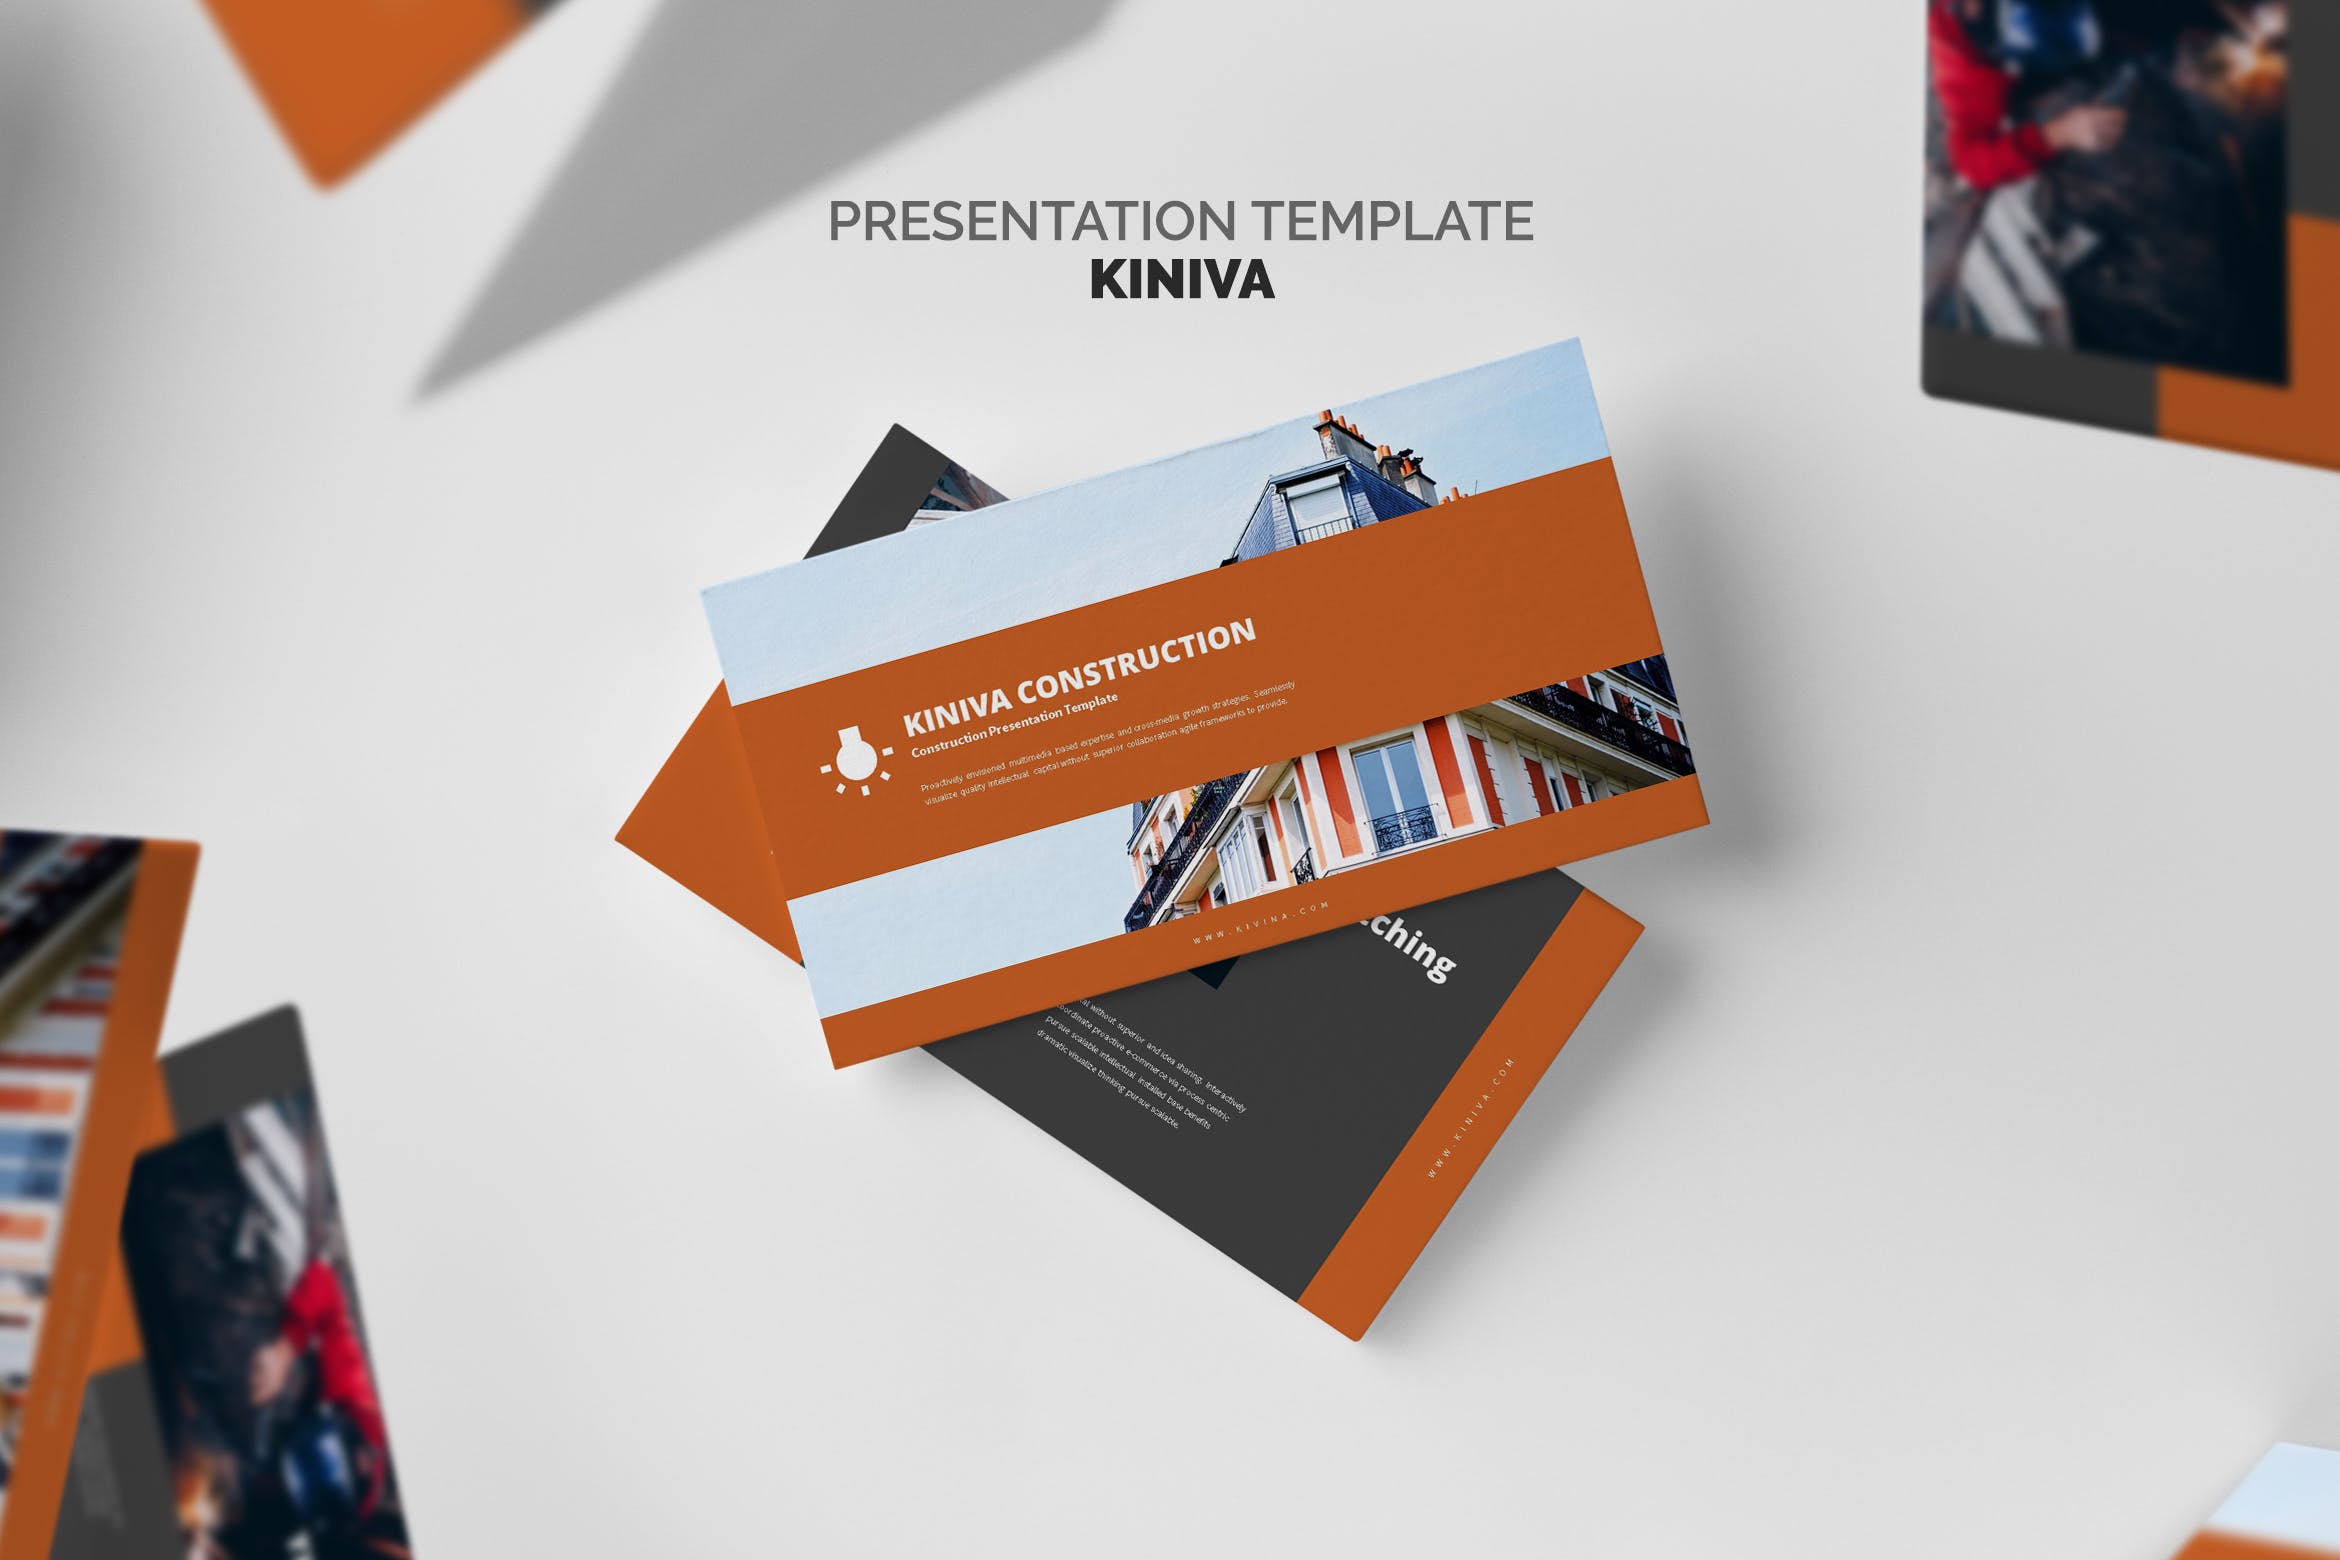 建筑与工程企业&项目介绍蚂蚁素材精选PPT模板 Kiniva : Construction & Engineering Powerpoint插图